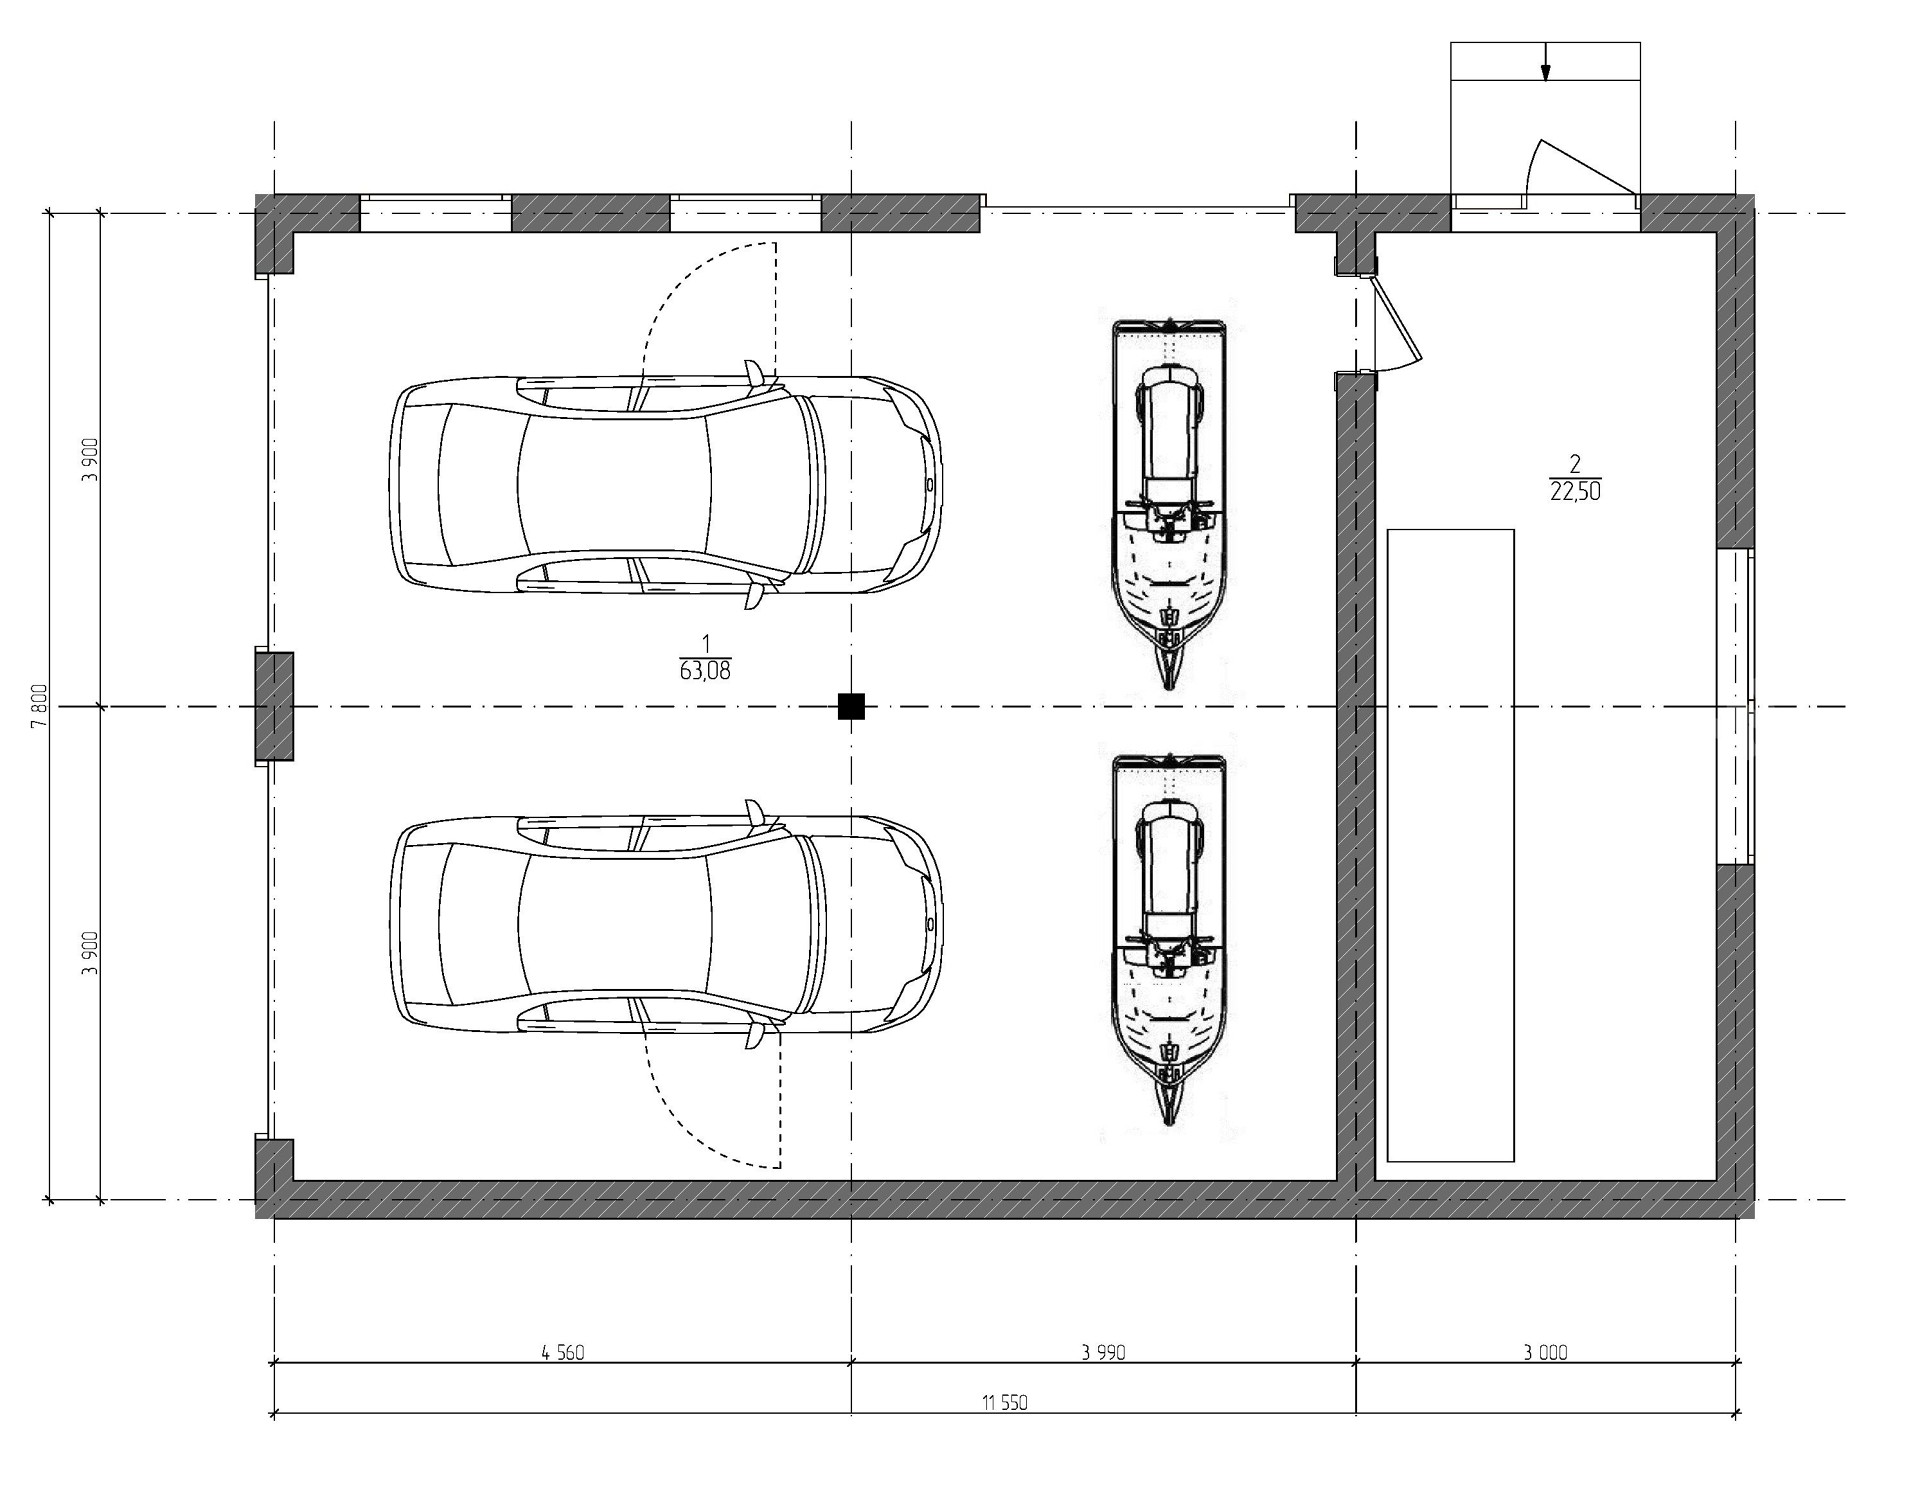 Каким должен быть размер гаража на 2 машины?